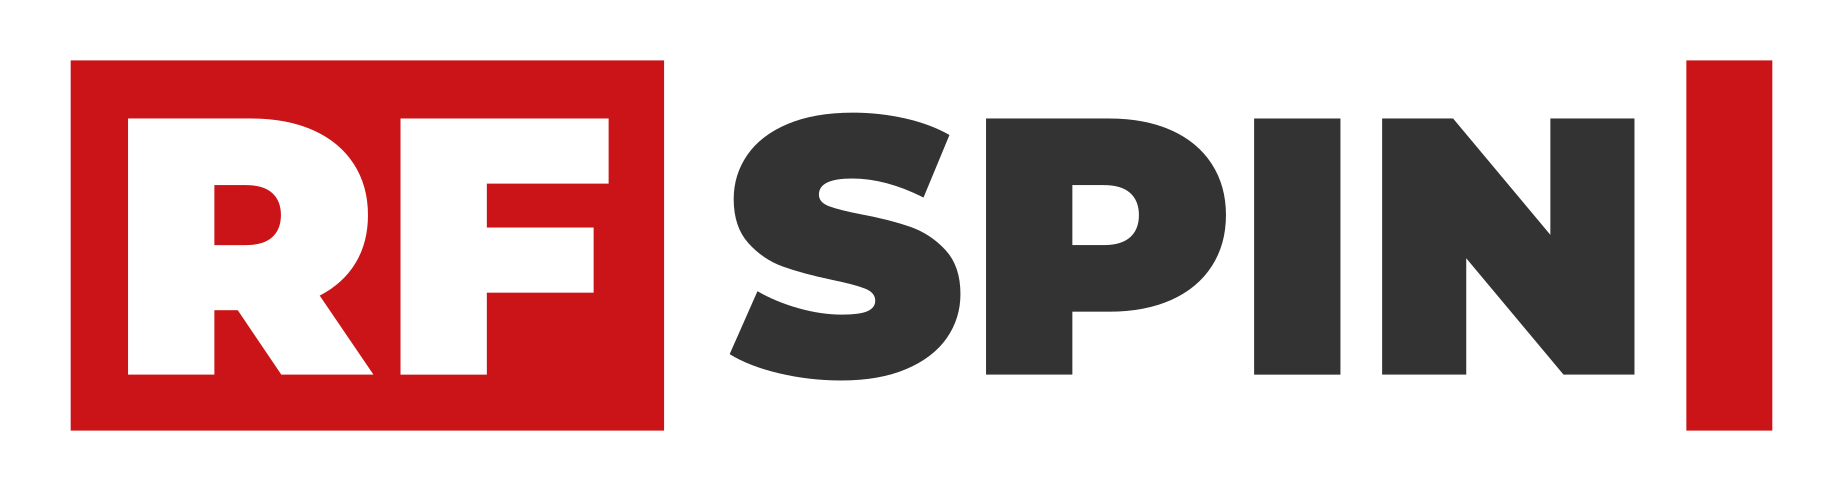 RFspin_logo